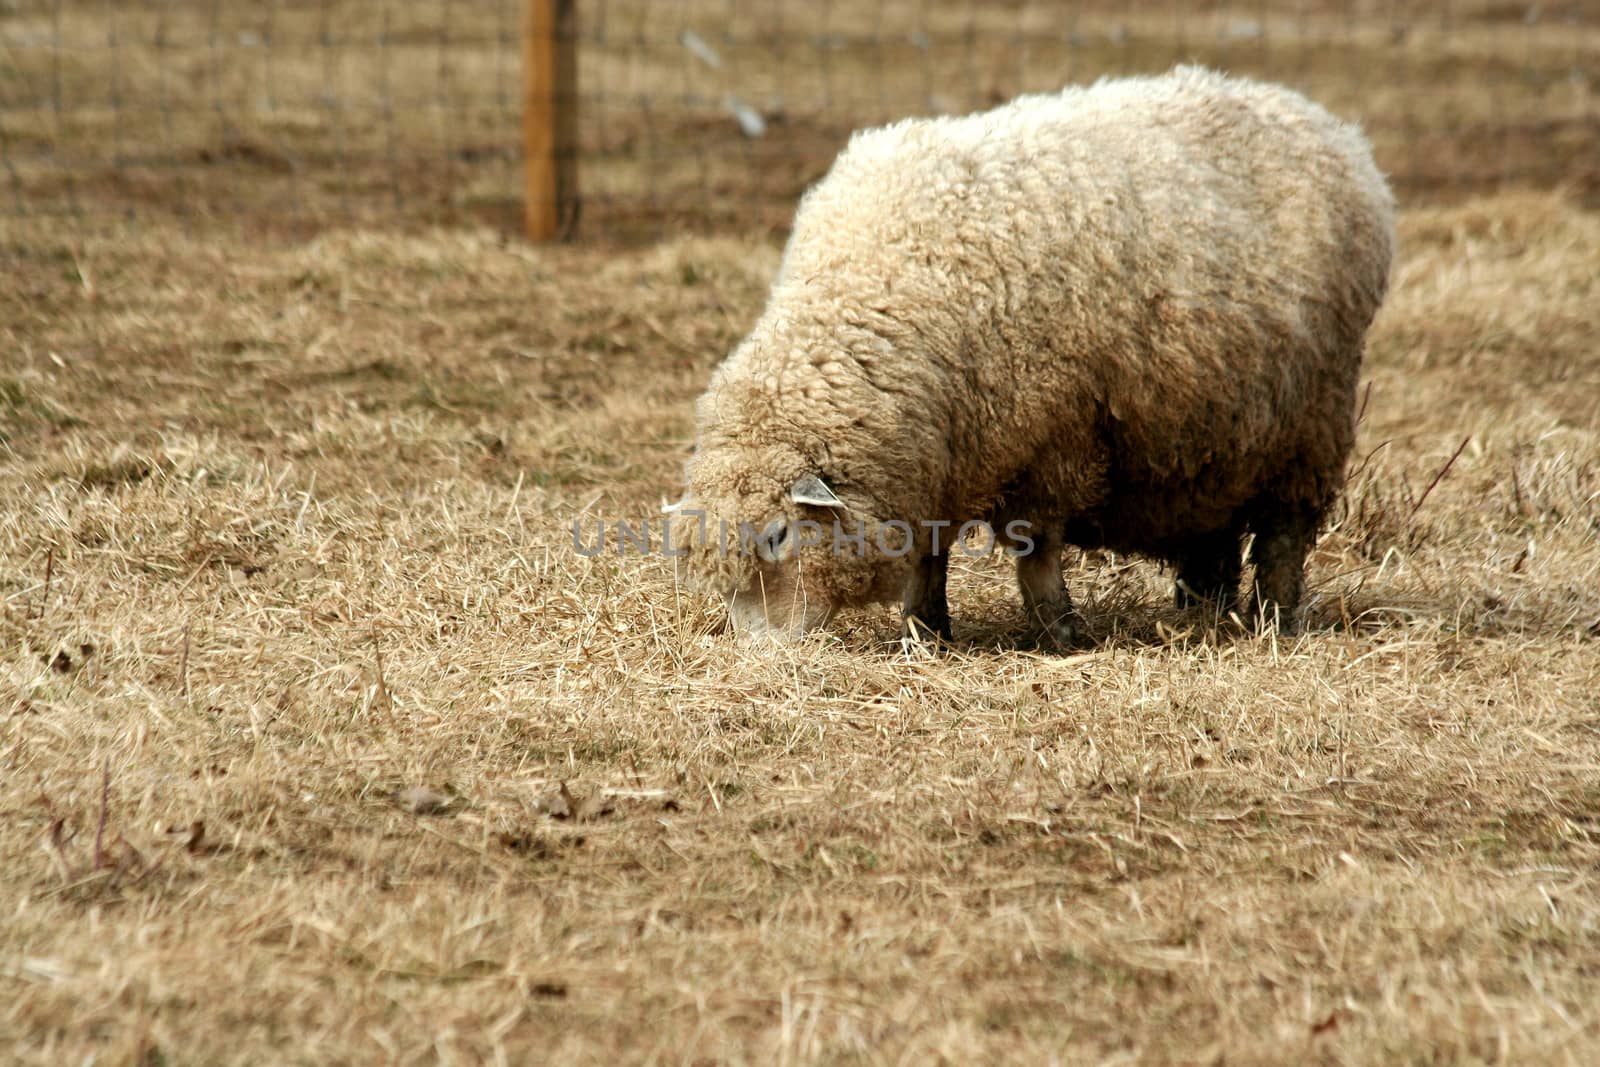 A Sheep grazing in a field